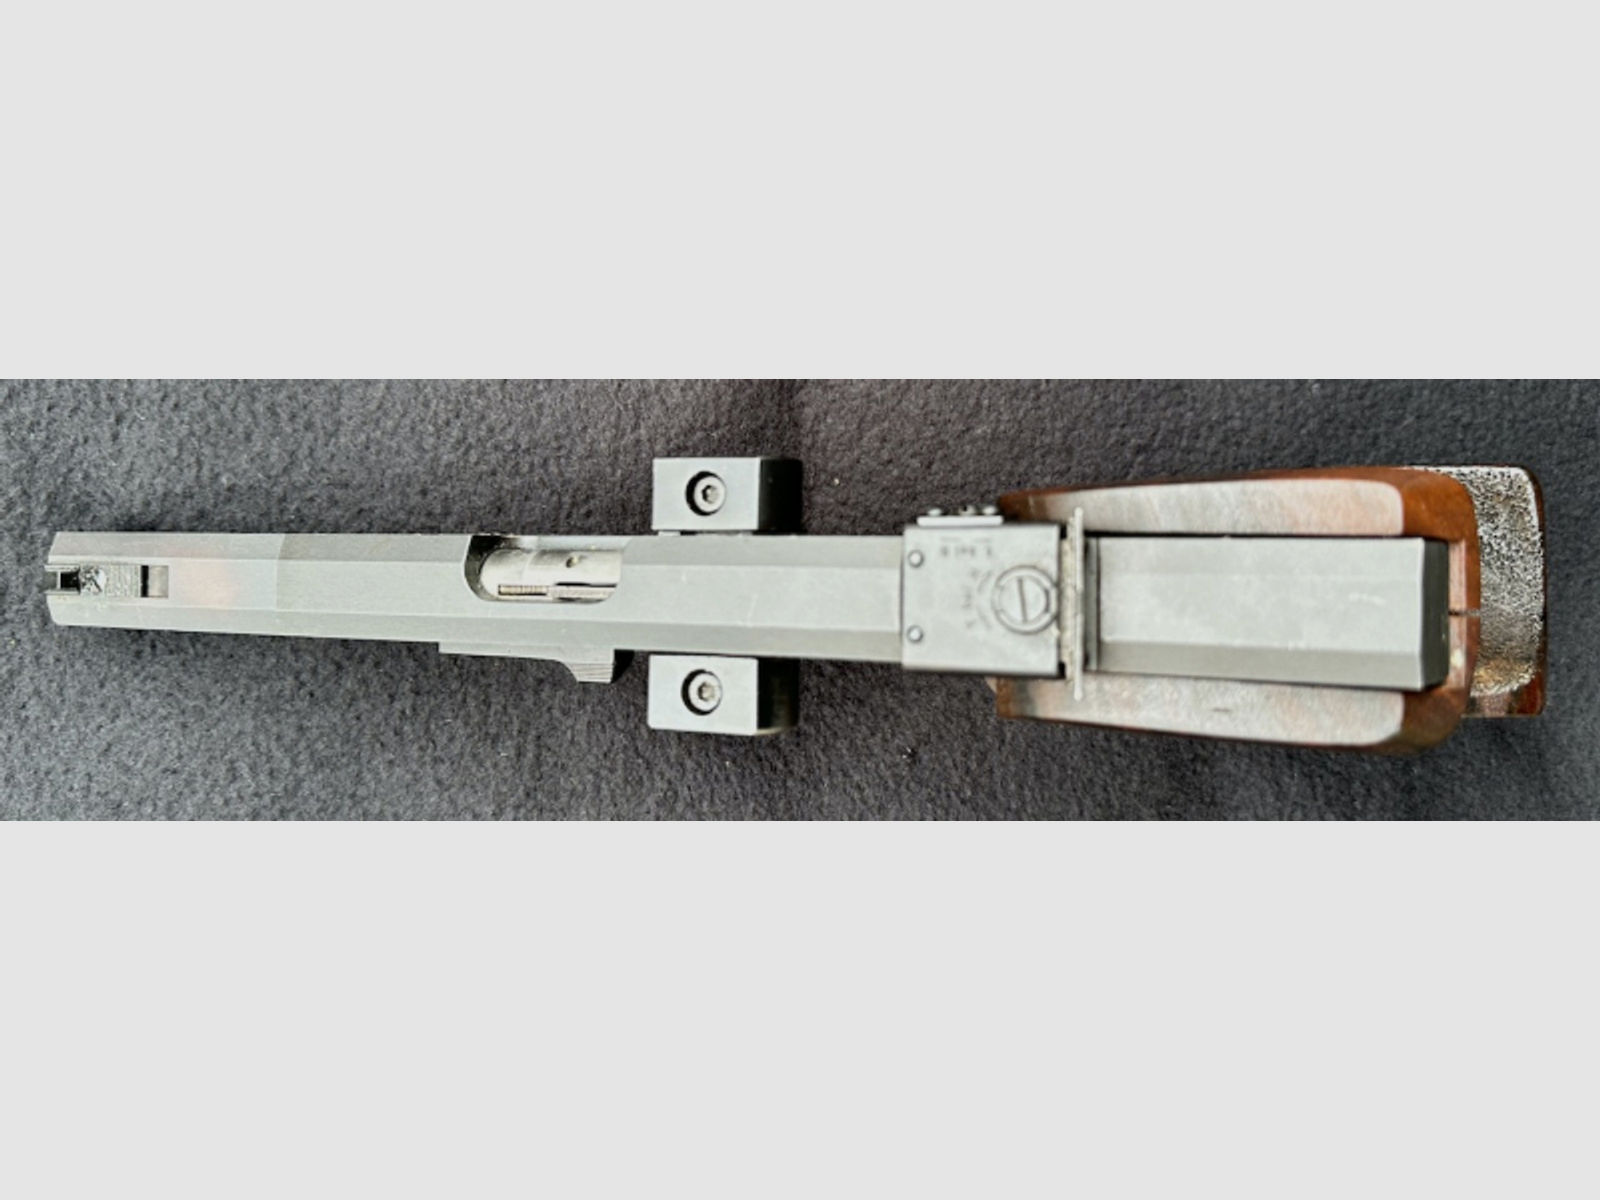 Pistole Walther GSP - Standardpistole - Sportpistole - .32 S&W long WC - Hofmann Griff